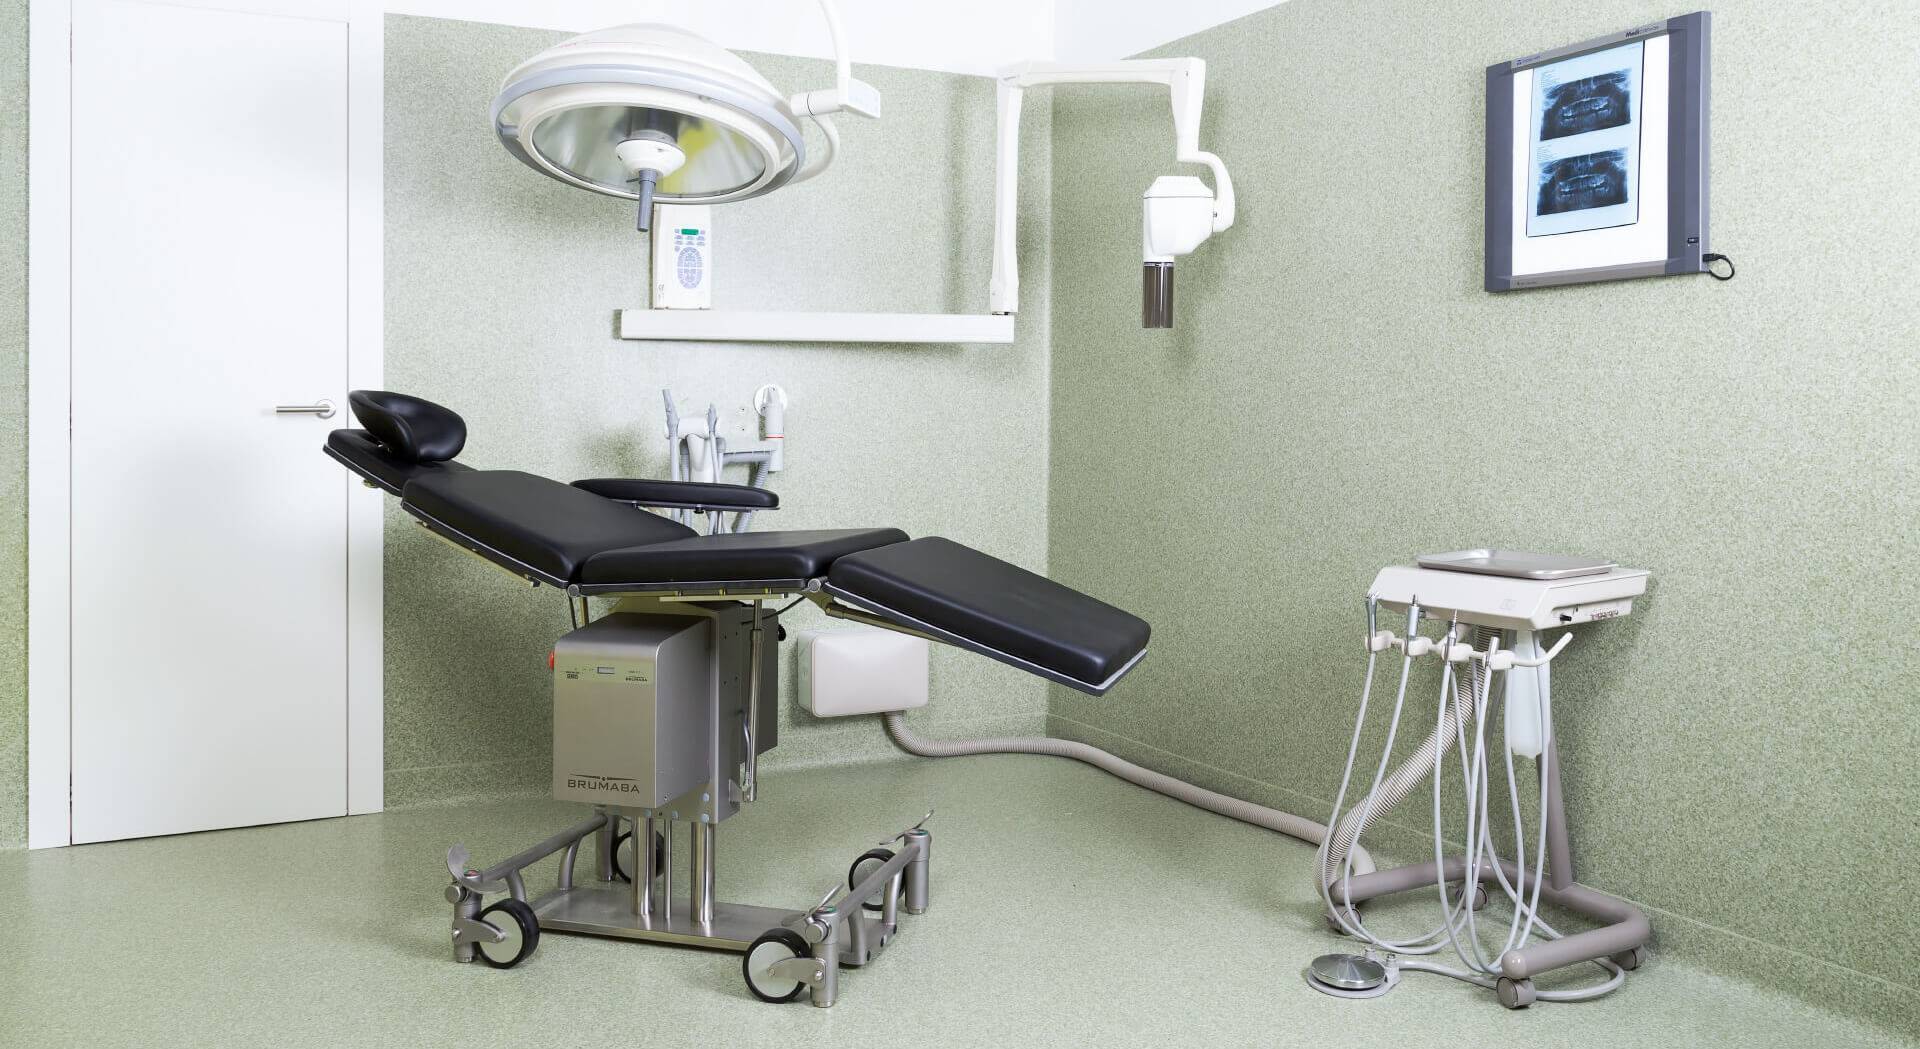 Interventi in anestesia locale o in sedazione cosciente presso la Clinica Marchetti di Morbegno